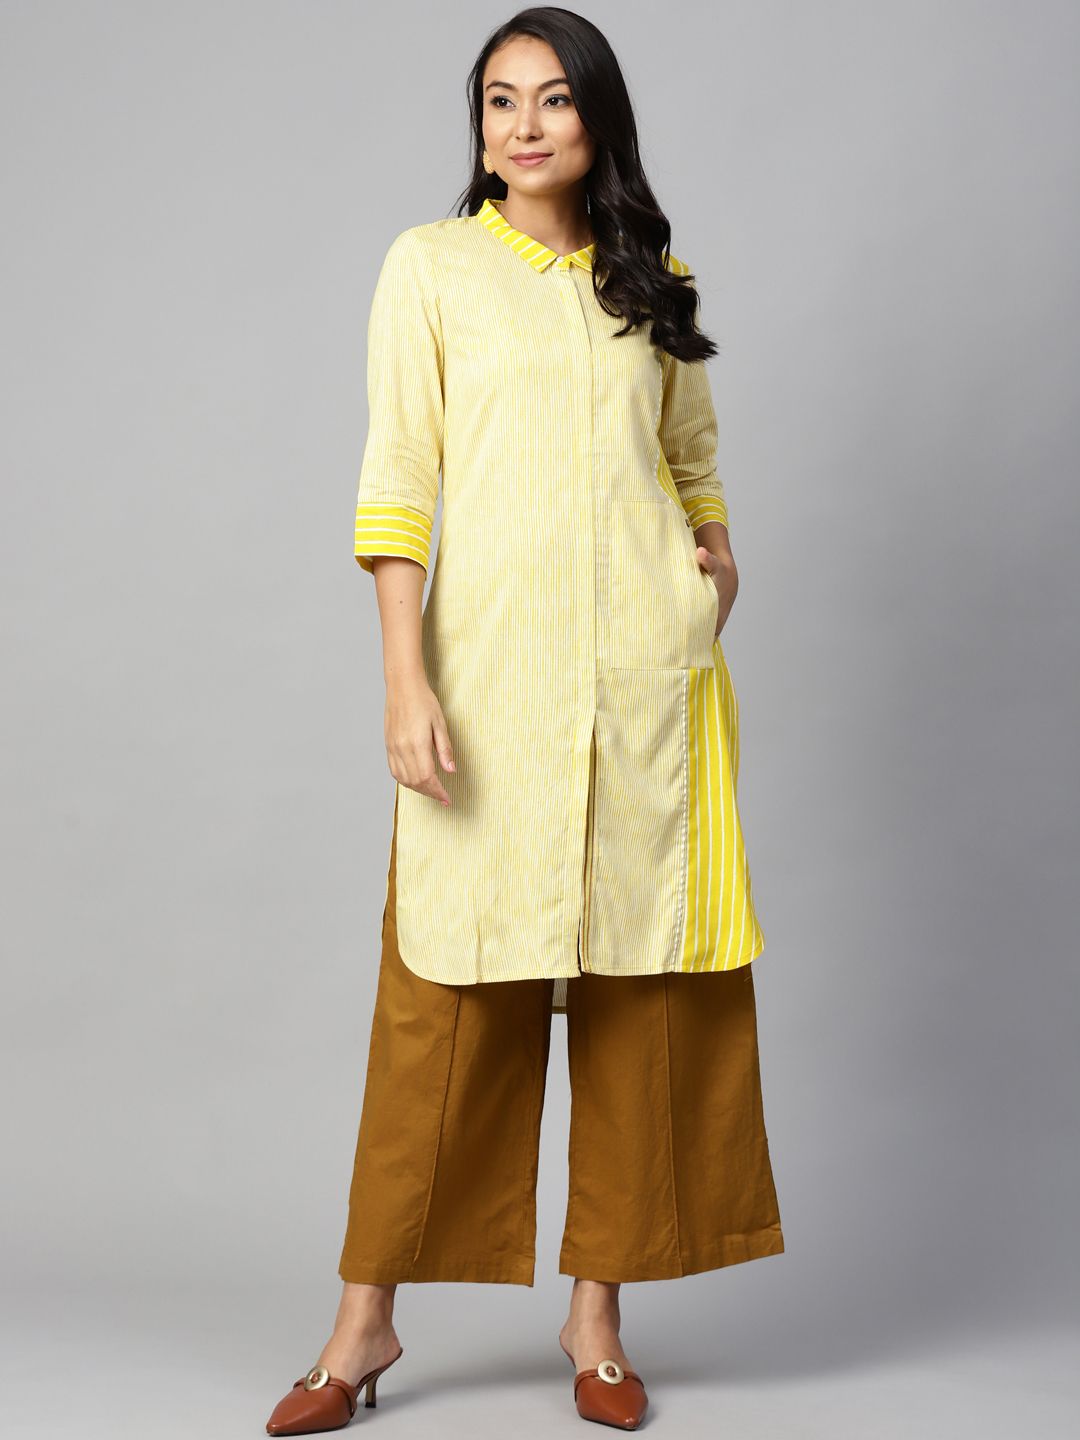 W Women Yellow & White Striped Pathani Kurta Price in India